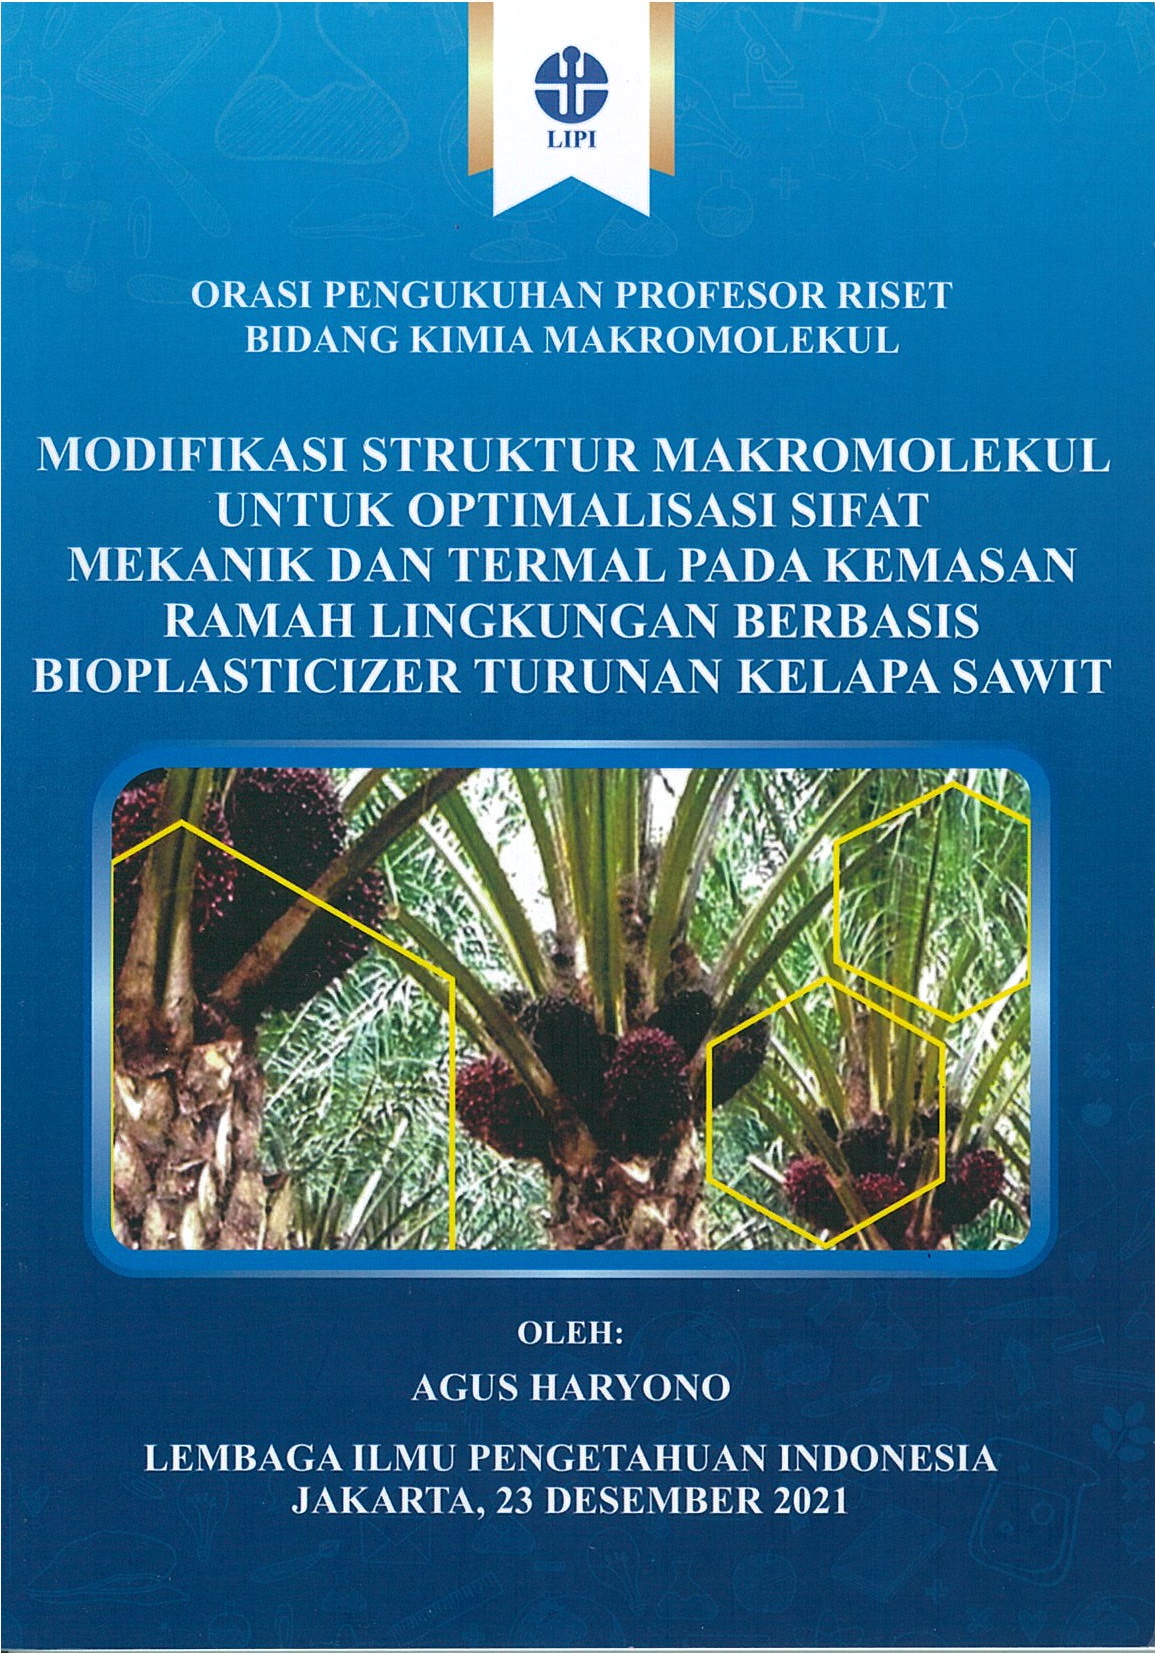 Modifikasi struktur makromolekul untuk optimalisasi sifat mekanik dan termal pada kemasan ramah lingkungan berbasis bioplasticizer turunan kelapa sawit